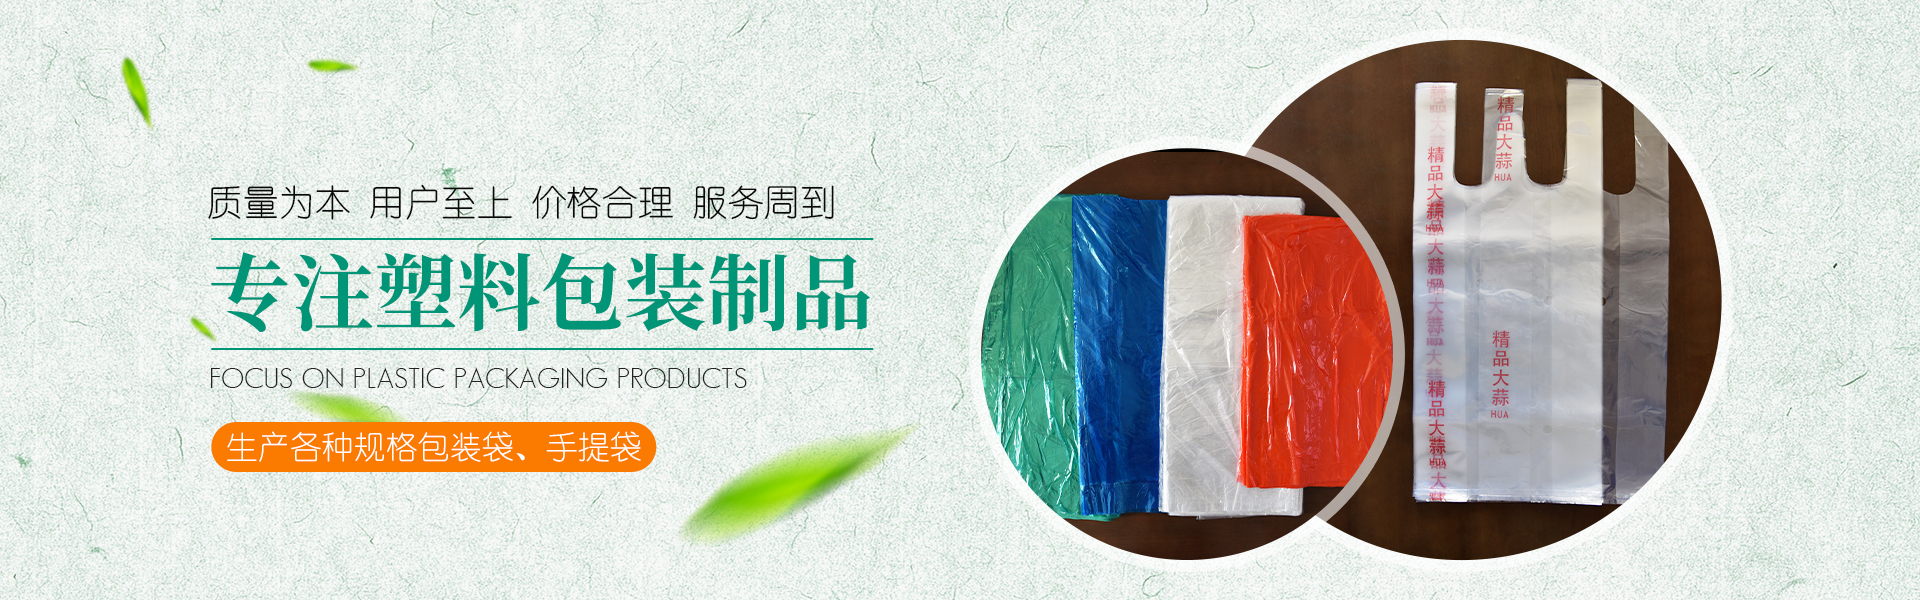 青州市金海源[Yuán]塑料包◆裝◆制品有限公司